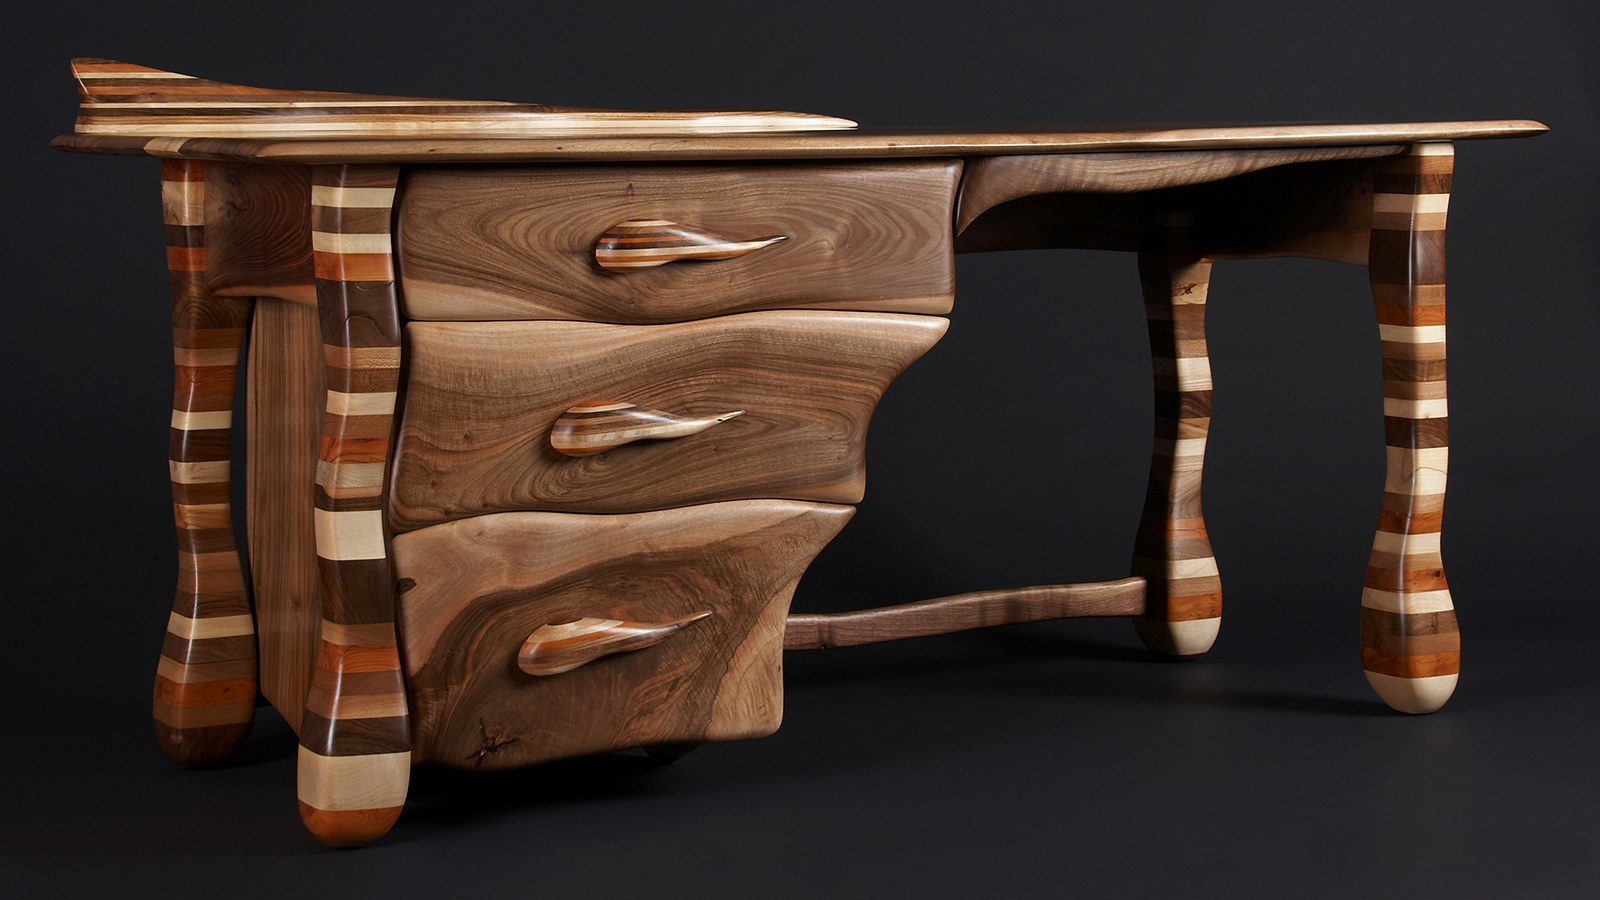 Wooden мебель. Интересные деревянные изделия. Необычная мебель из дерева. Необычные деревянные столы. Необычные предметы интерьера.